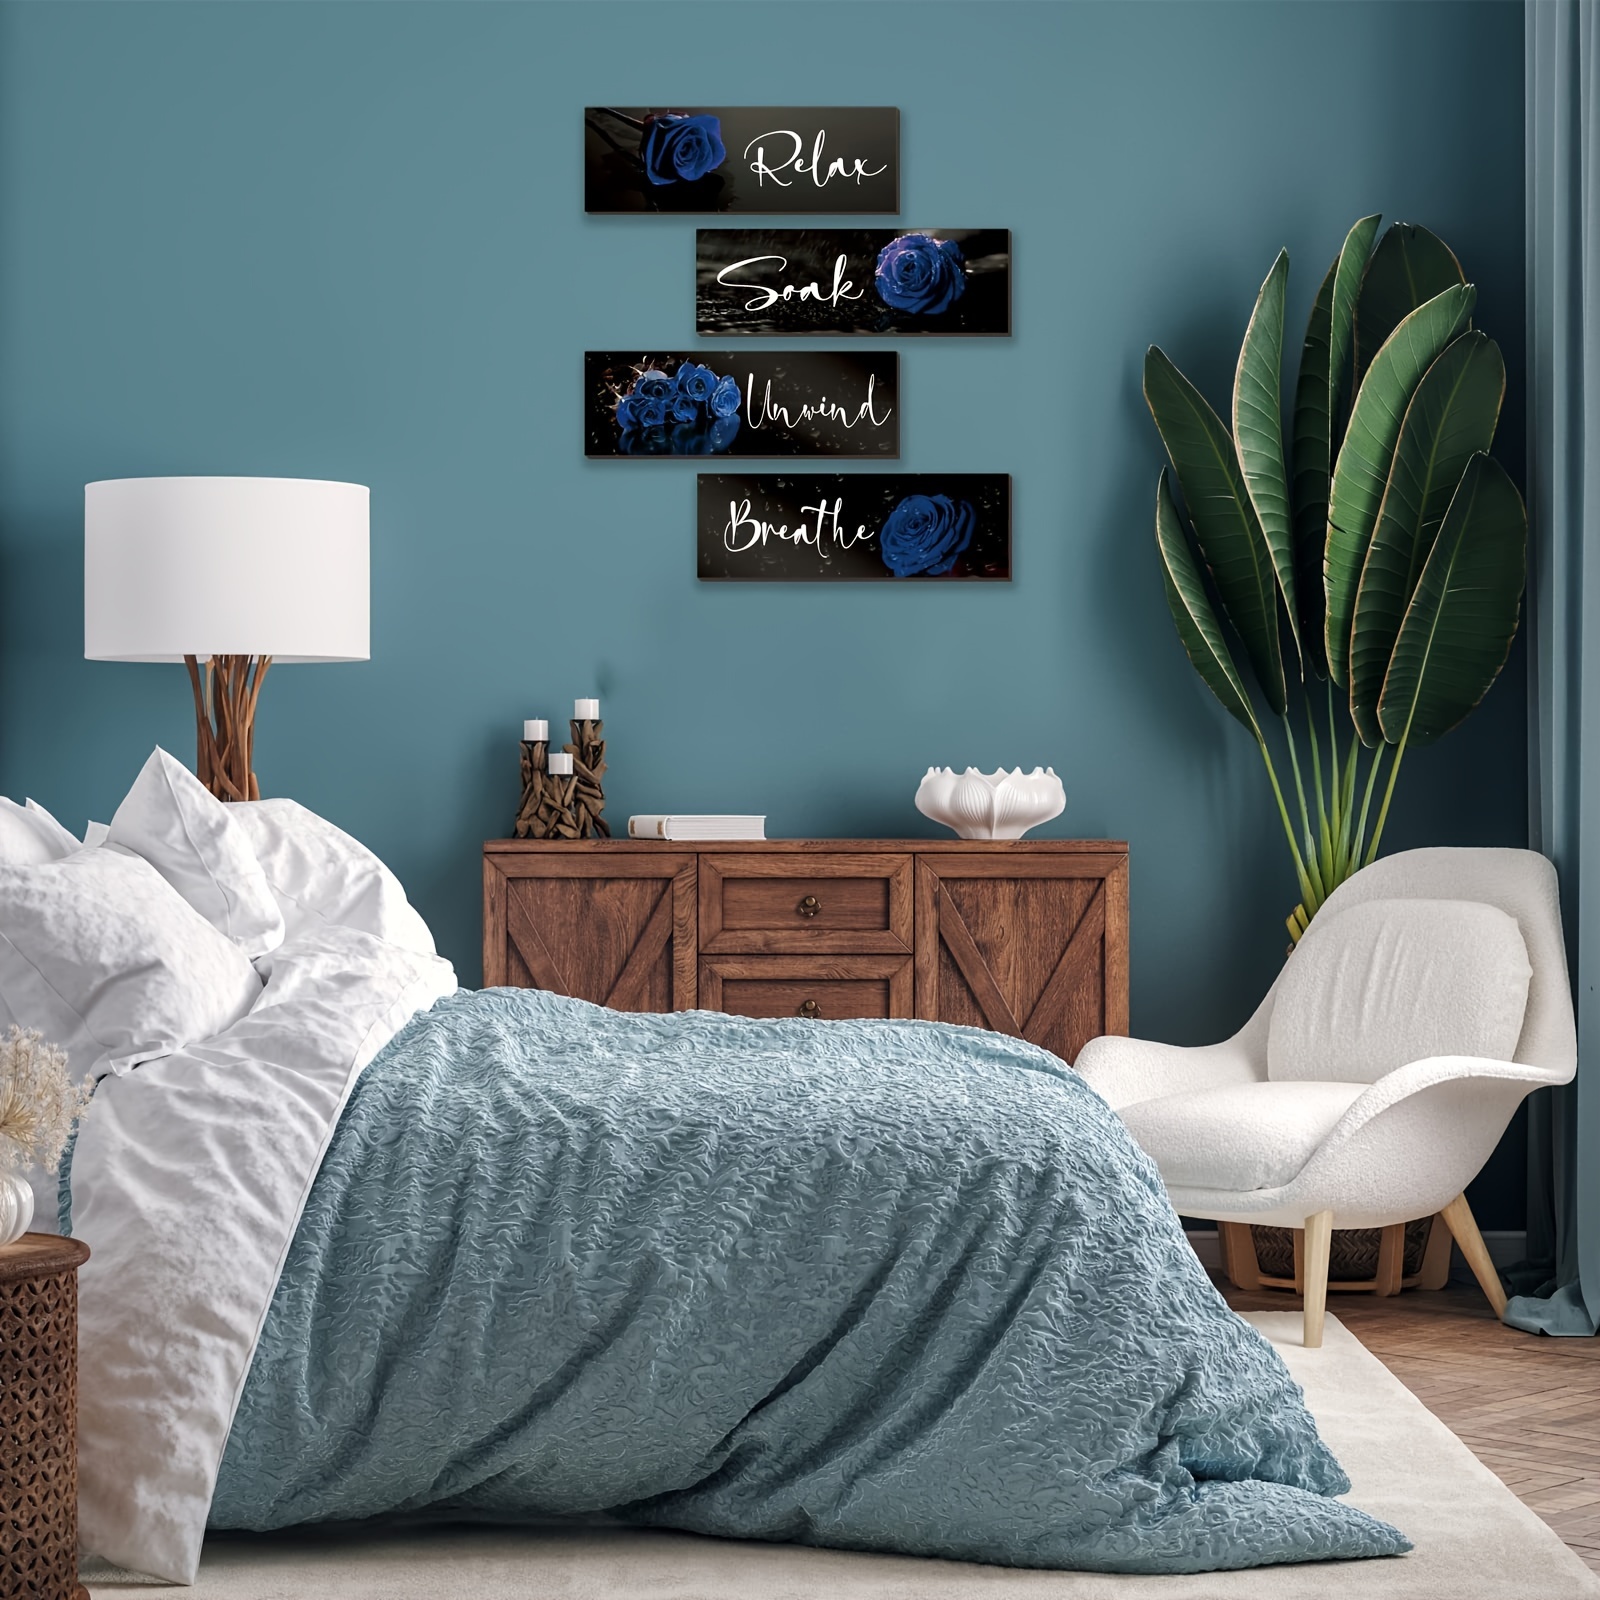  Divertido póster artístico de pared de baño, decoración de  pared de baño azul, cuadros de flores azul marino para el baño, decoración  rústica de pared de baño vintage, decoración de baño